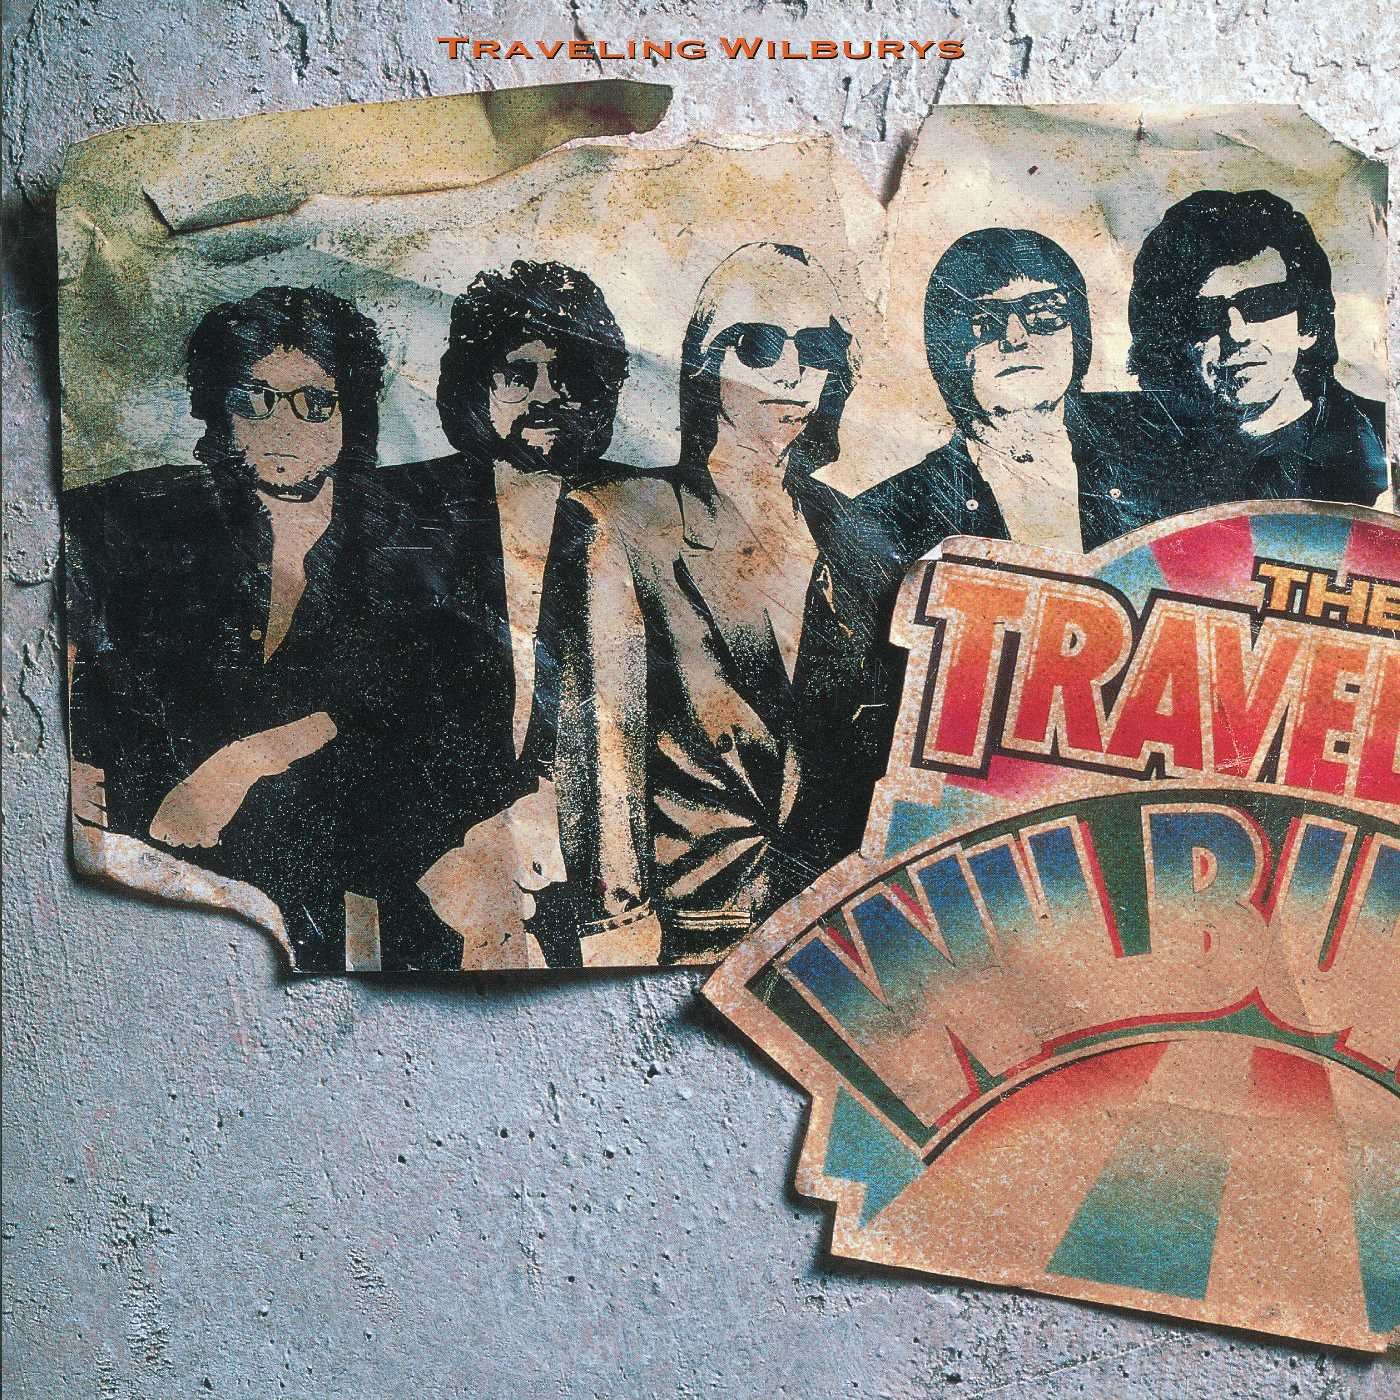 Traveling Wilburys - "The Traveling Wilburys Vol. 1"